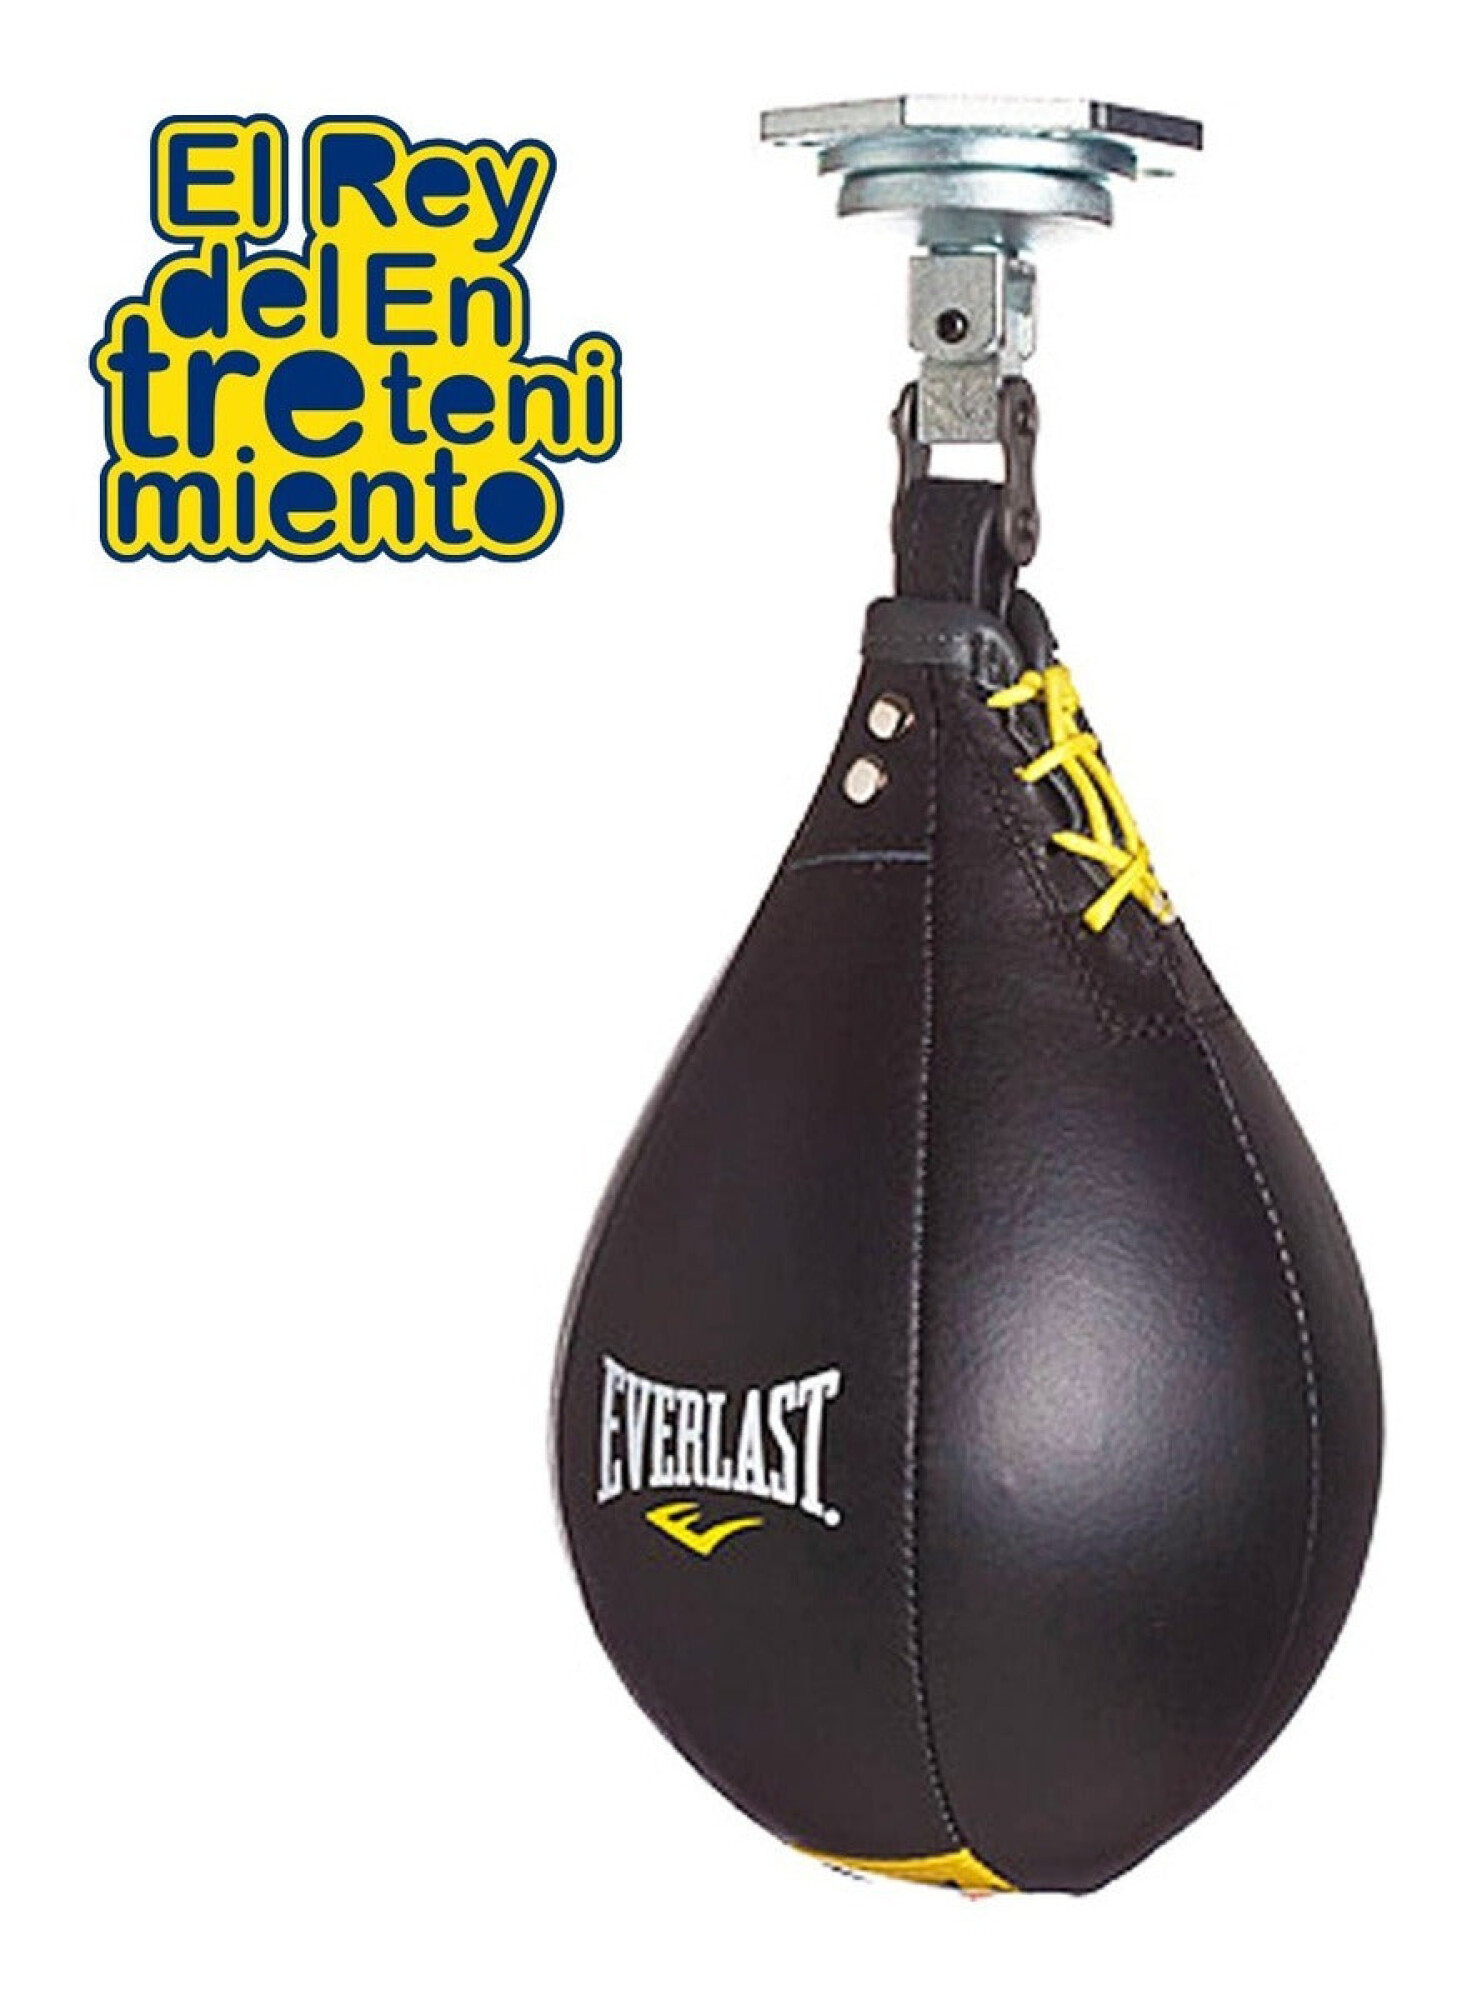 Outlet – Punching Ball Pro – Pera de Boxeo con base – Compra Deporte Online  a Precios Rebajados – Ultimate Fitness